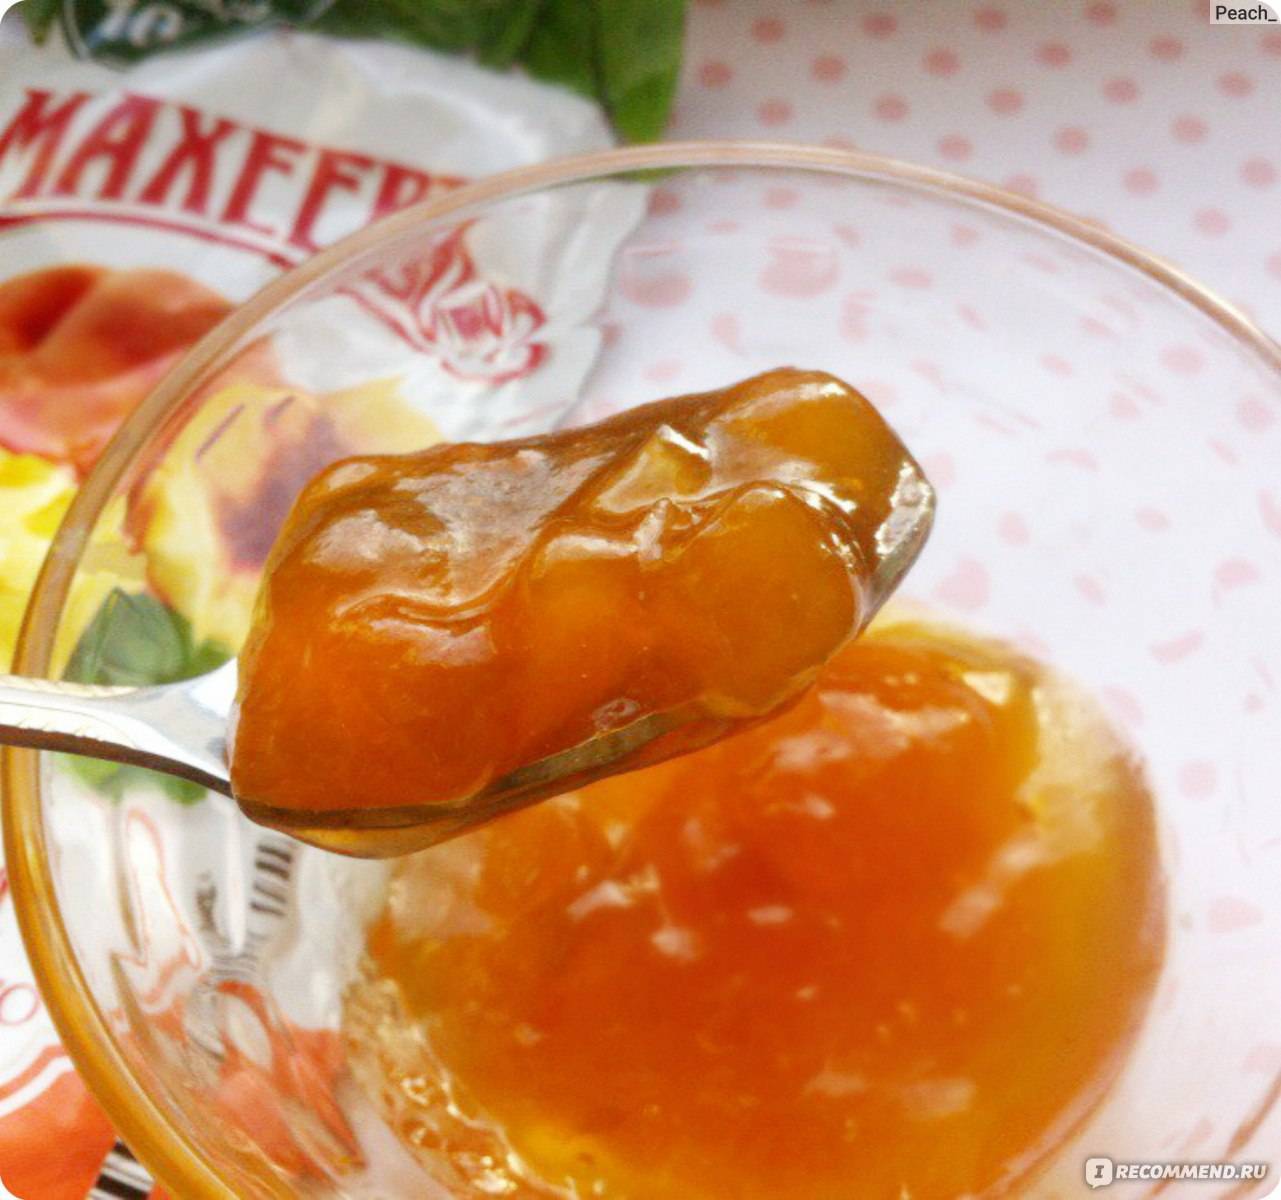 Пошаговые рецепты приготовления джема из персиков на зиму в домашних условиях, в мультиварке и на плите